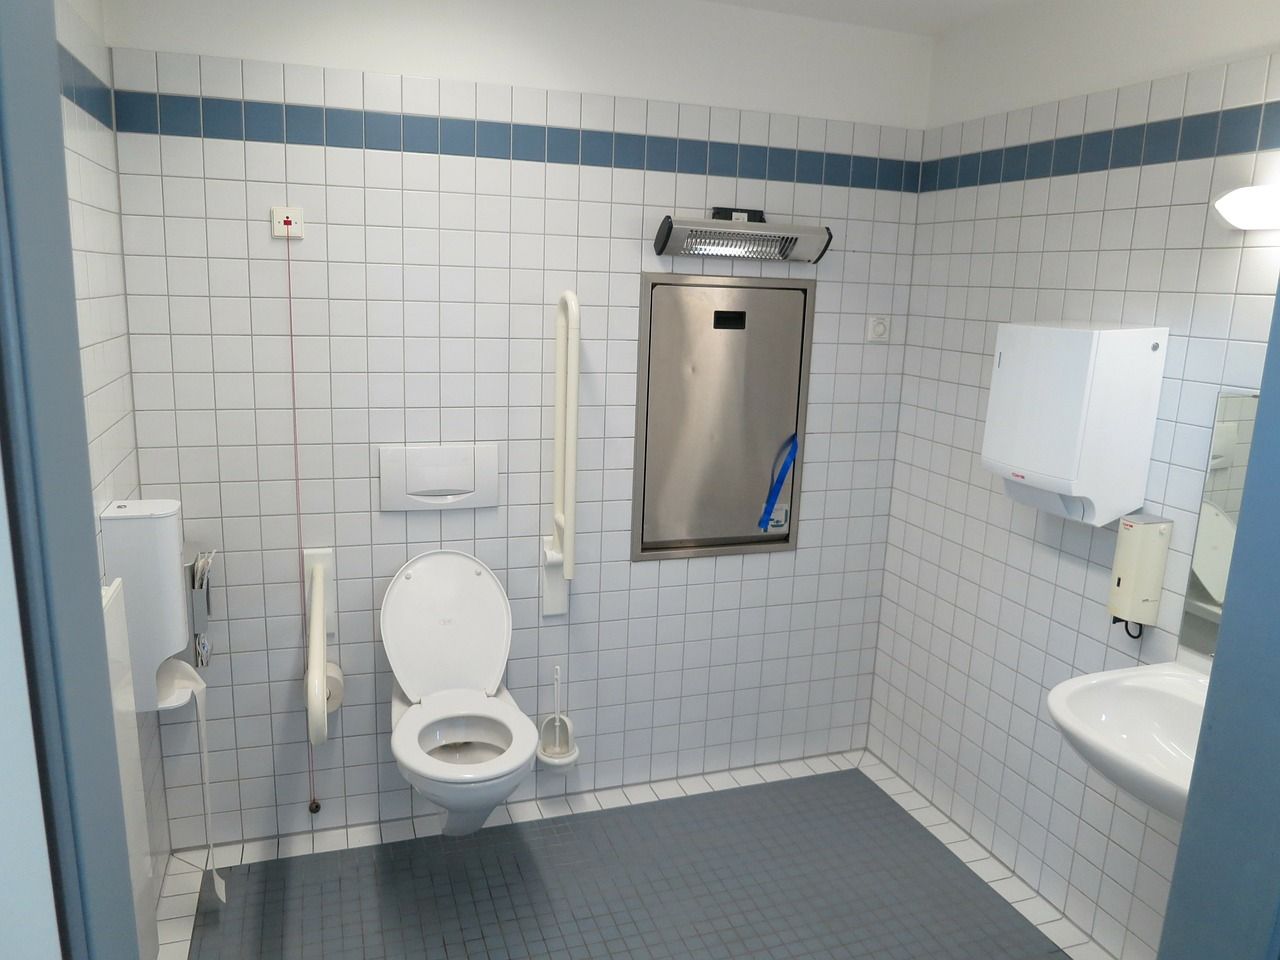 Łazienki publiczne – podstawowe wyposażenie, które pozwala zachować odpowiednią higienę